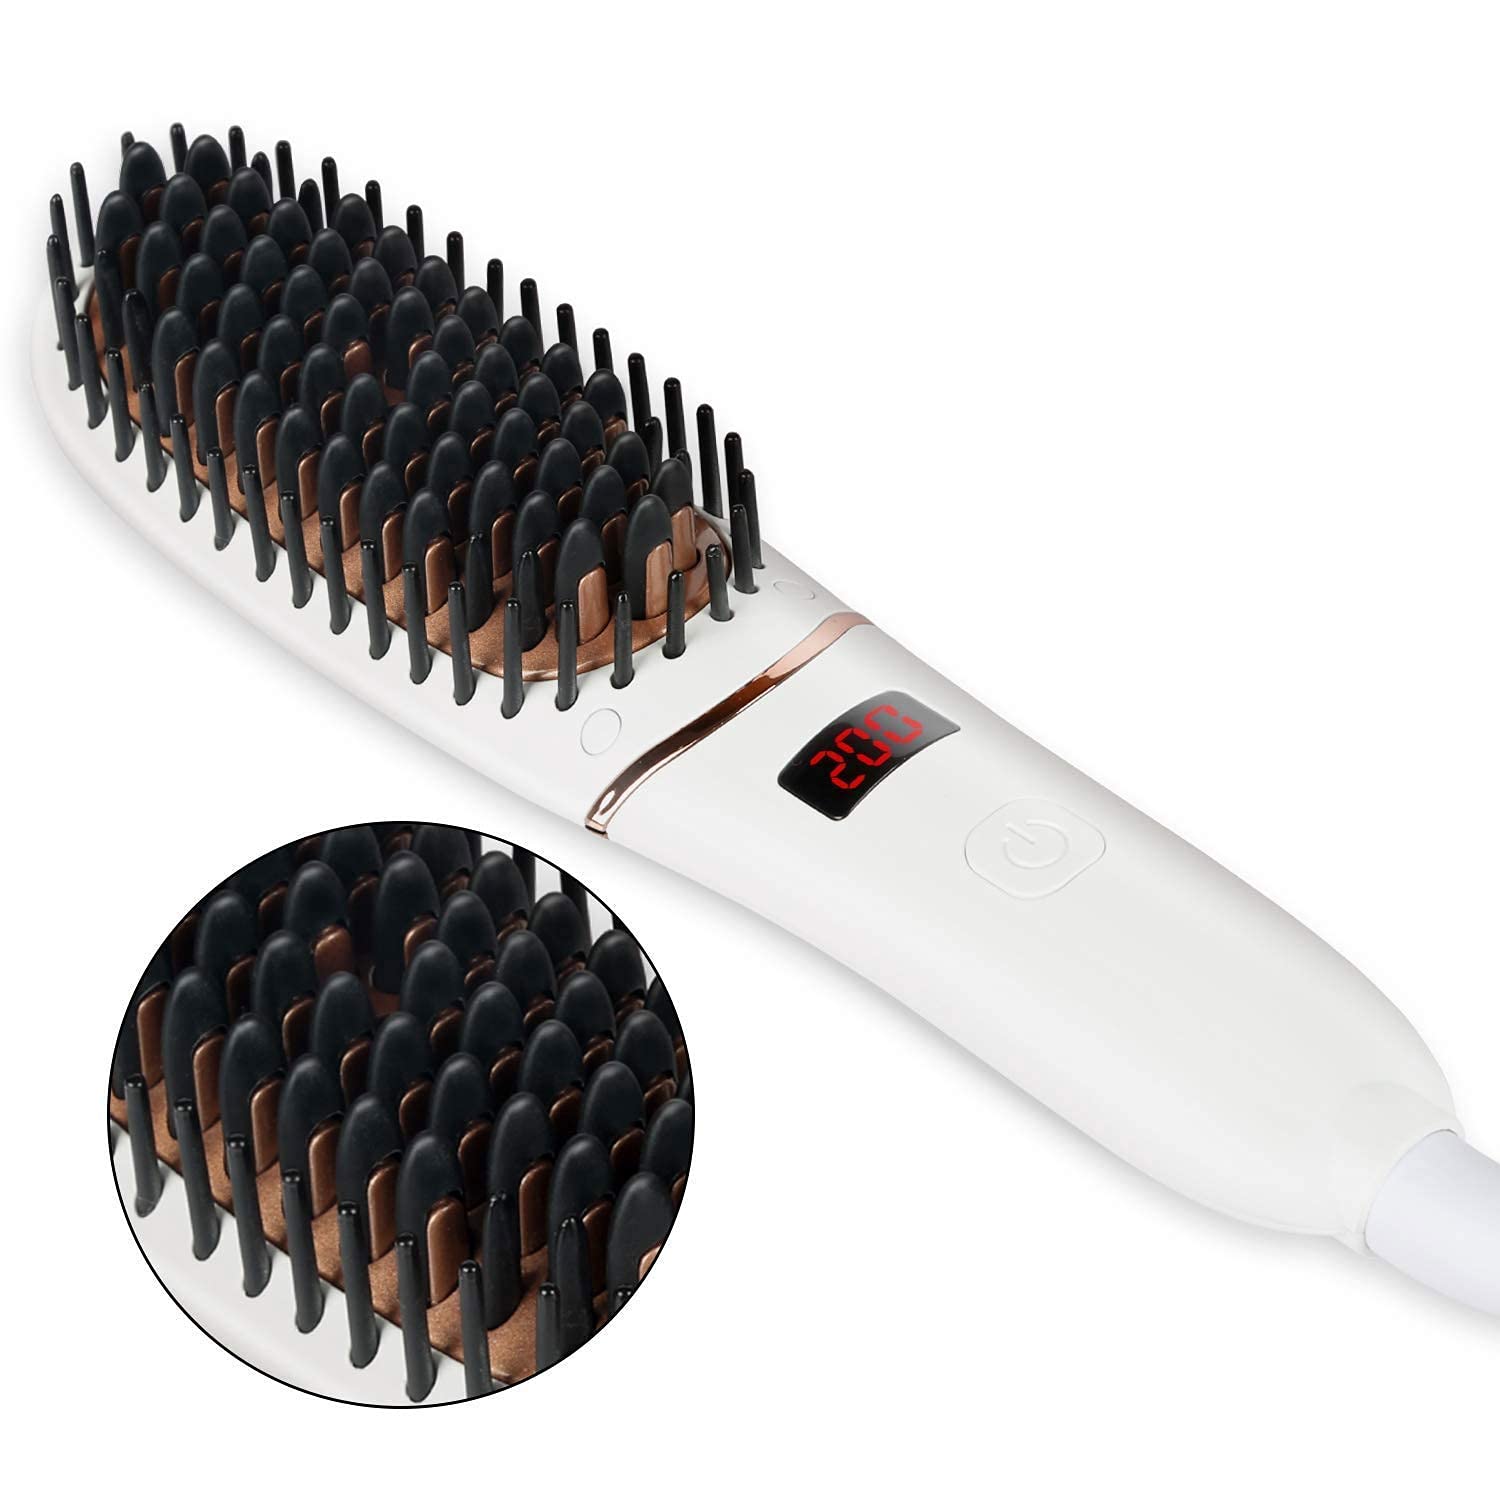 Photo 1 of Veru ETERNITY Hair Straightening Brush  Ionic Hair Straightener Brush with LED Display Fast MCH Ceramic Heated Straightening Tangle Frizz Hair